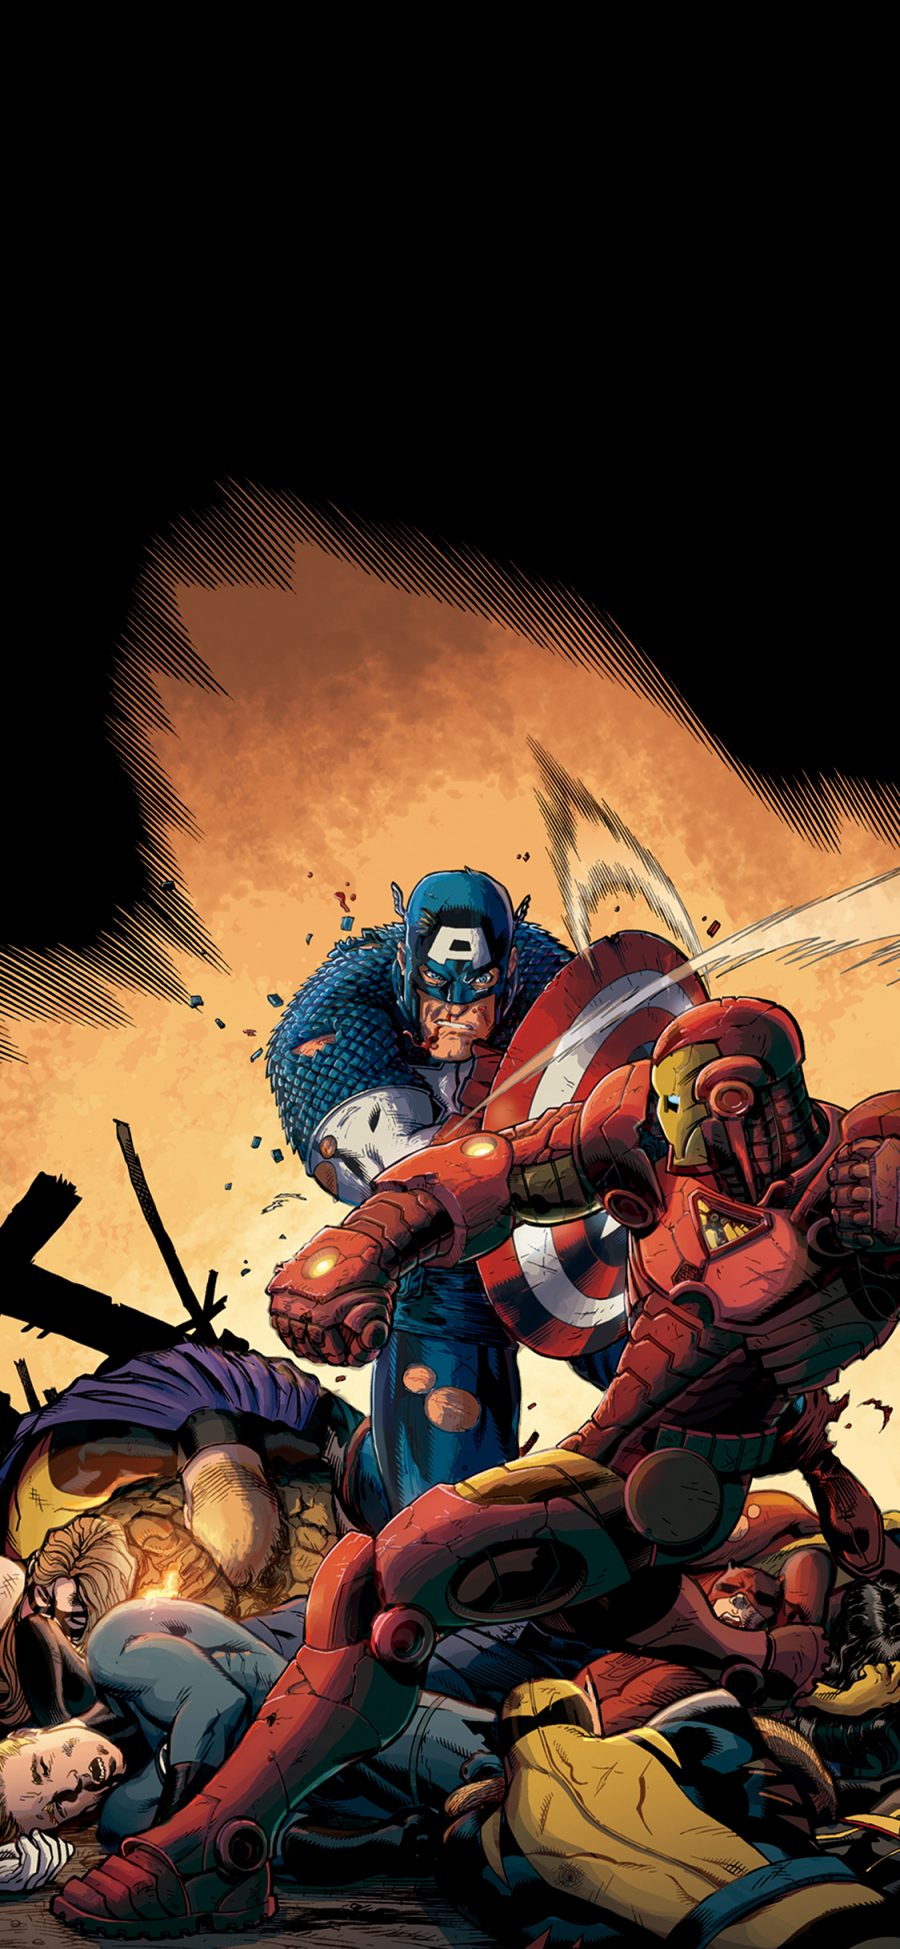 [2436×1125]复仇者联盟 漫威 超级英雄 美国队长 钢铁侠 欧美 苹果手机动漫壁纸图片